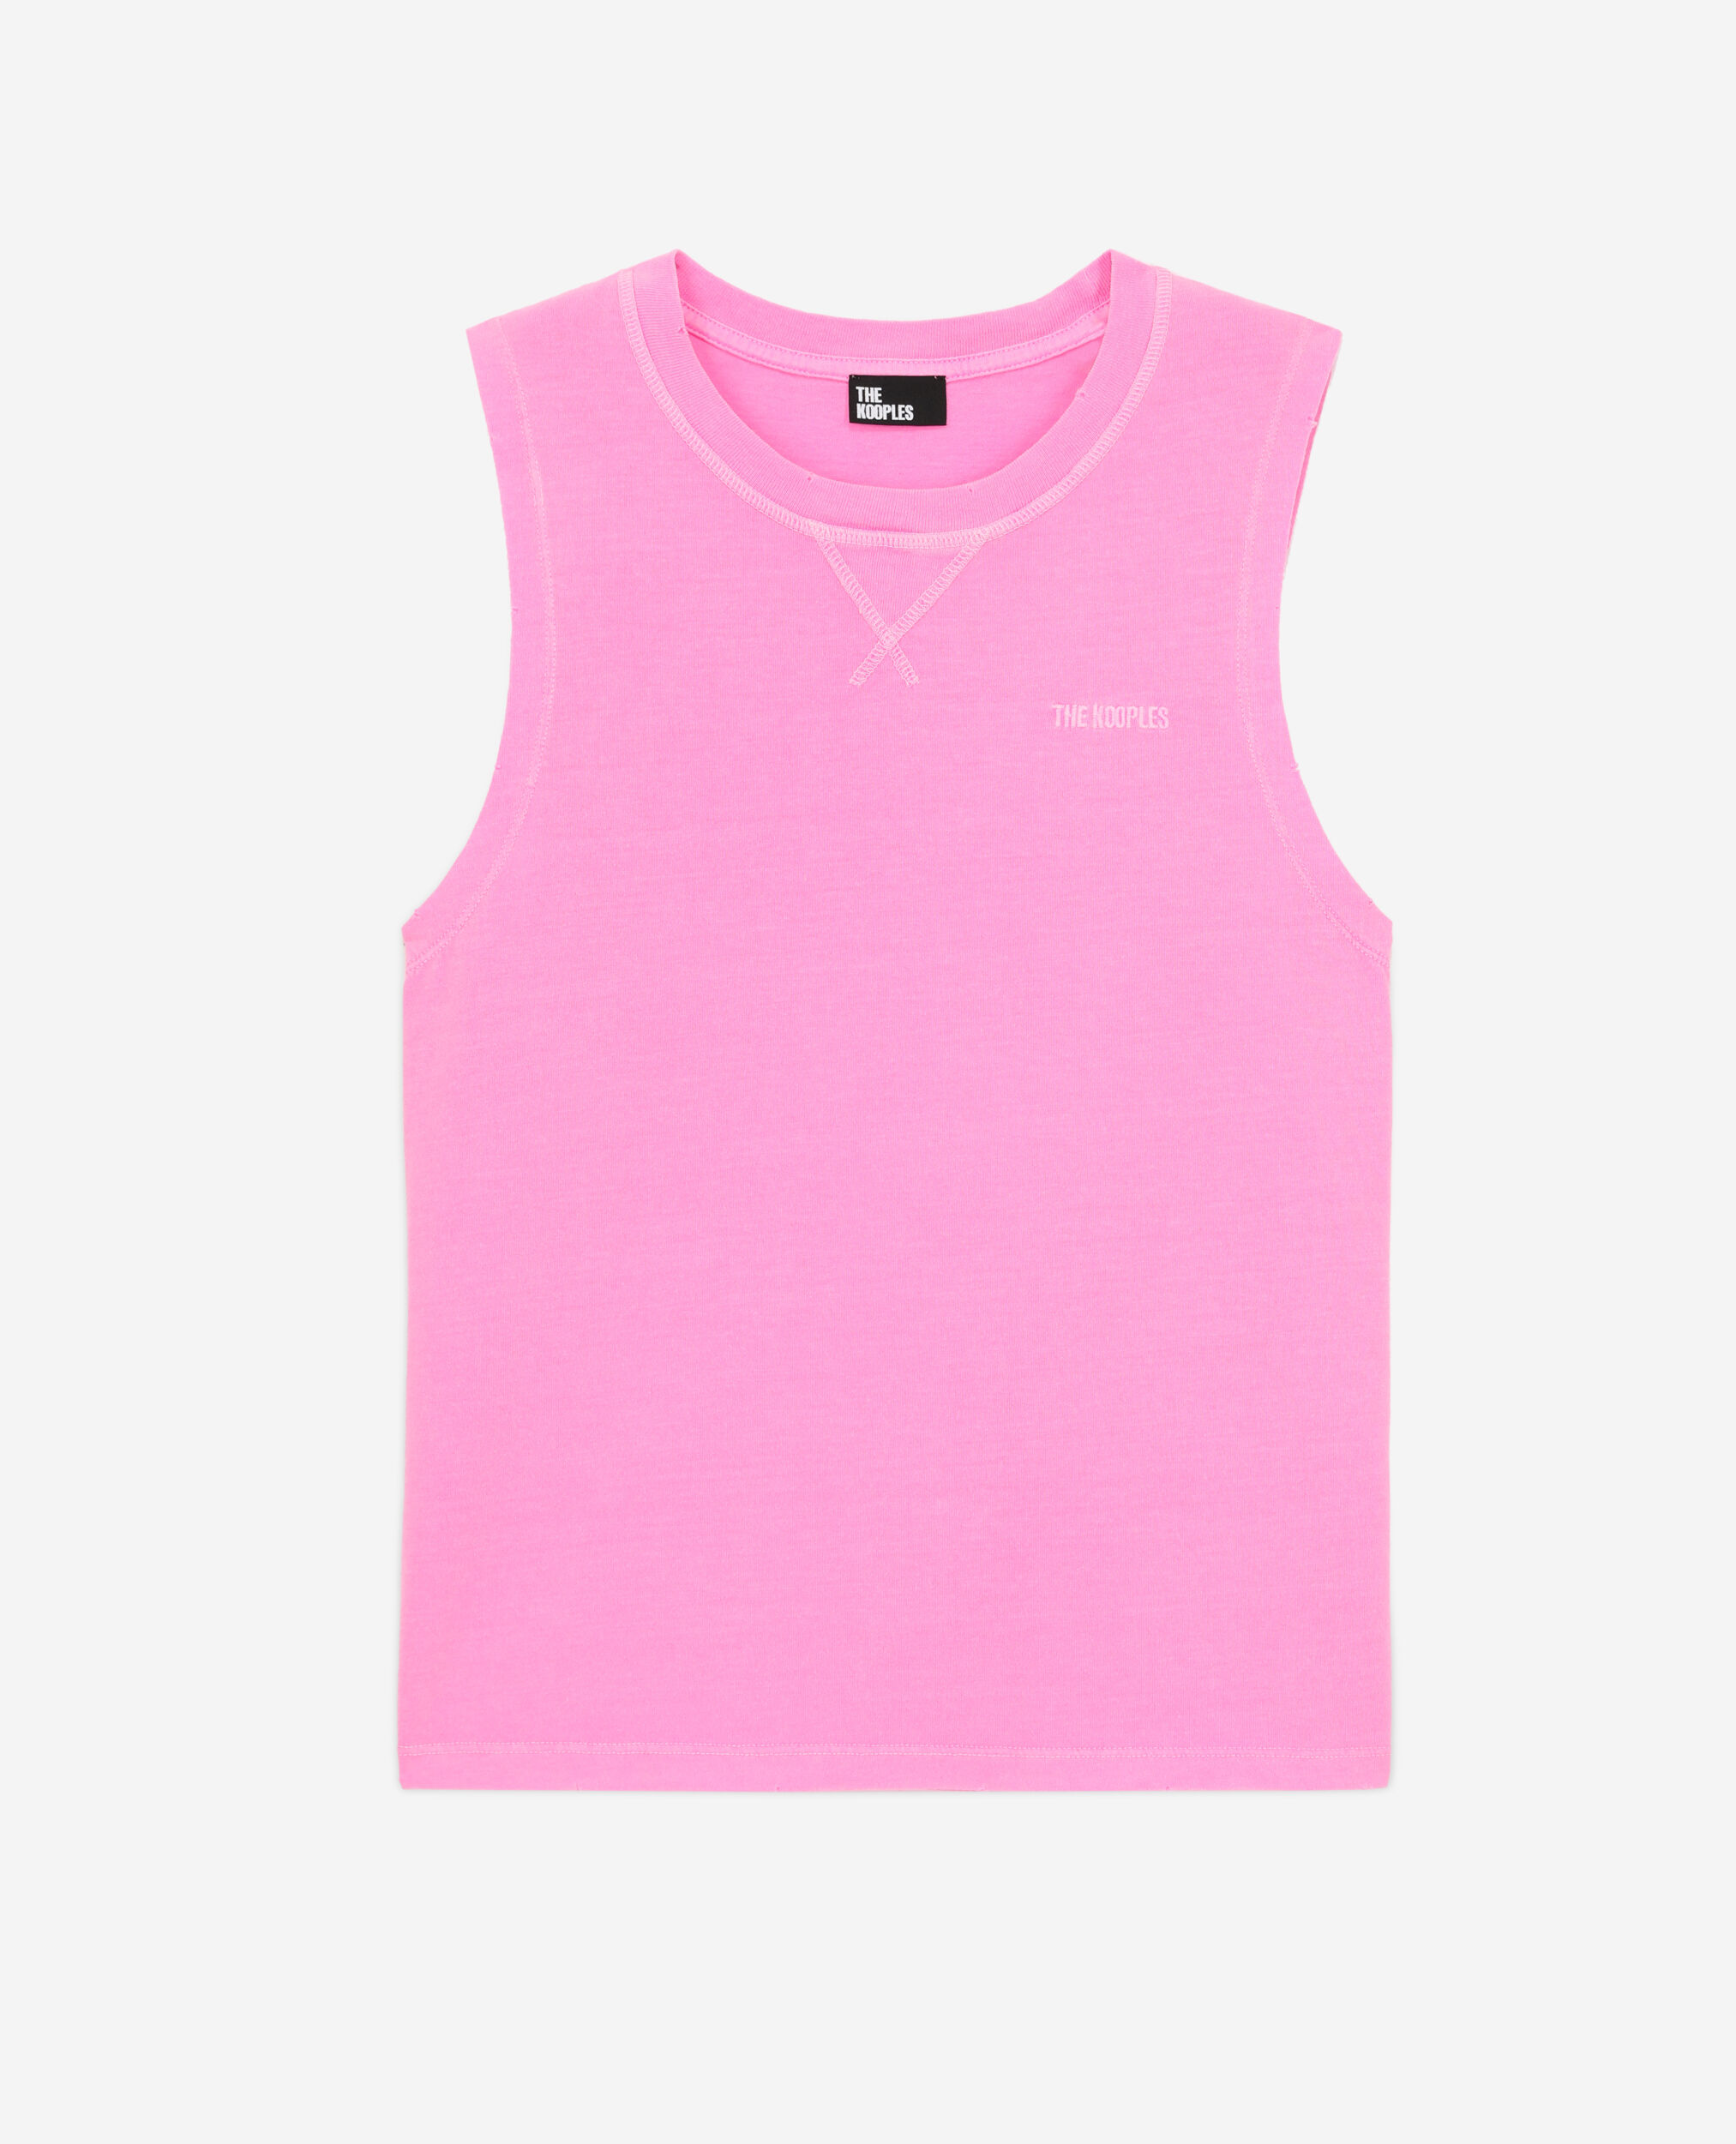 T-shirt Femme rose fluo avec logo, FLUO PINK, hi-res image number null